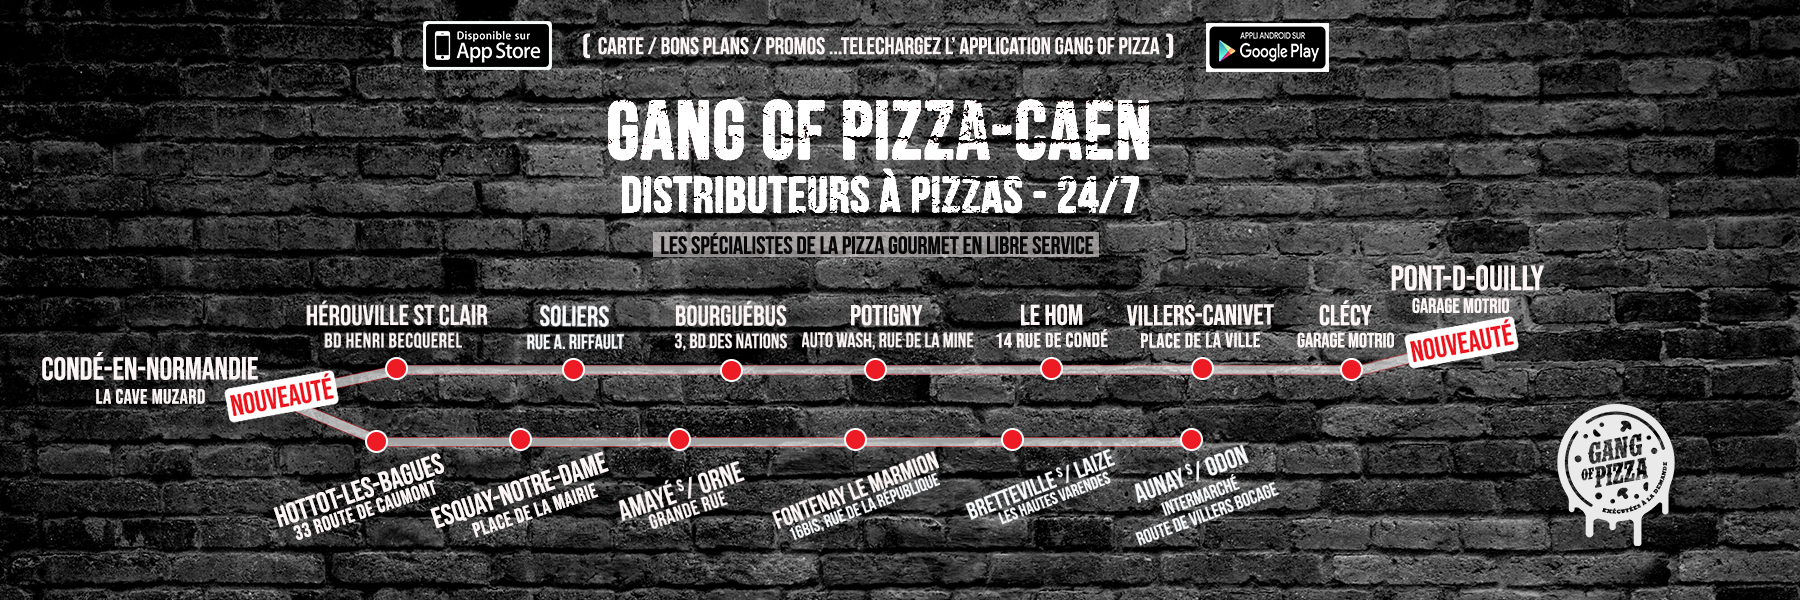 distributeurs-pizza-24-7-gang-of-pizza-herouville-saint-clair-hottot-les-bagues-soliers-amaye-sur-orne-soliers-bourguebus-fontenay-le-marmion-bretteville-sur-laize-potigny-clecy-aunay-sur-odon-le-hom